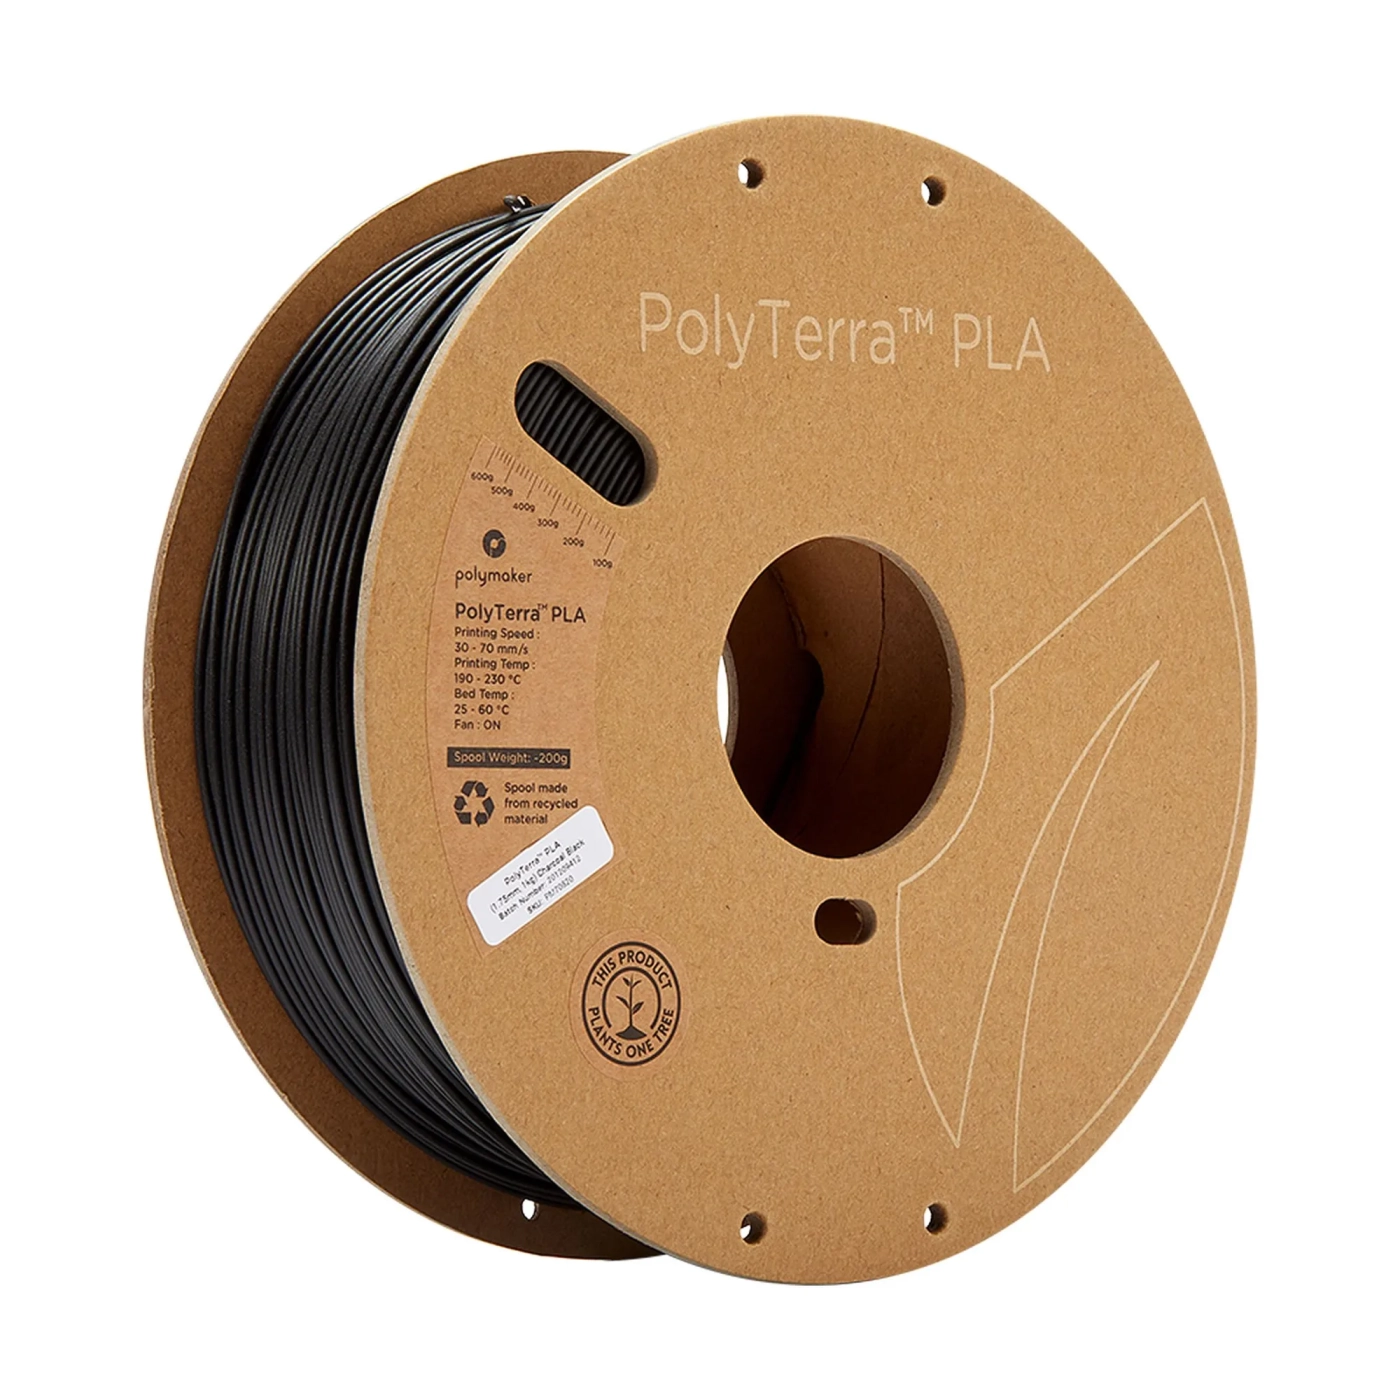 Купить PolyTerra PLA Filament (пластик) для 3D принтера Polymaker 1кг, 1.75мм, древесный уголь черный - фото 1